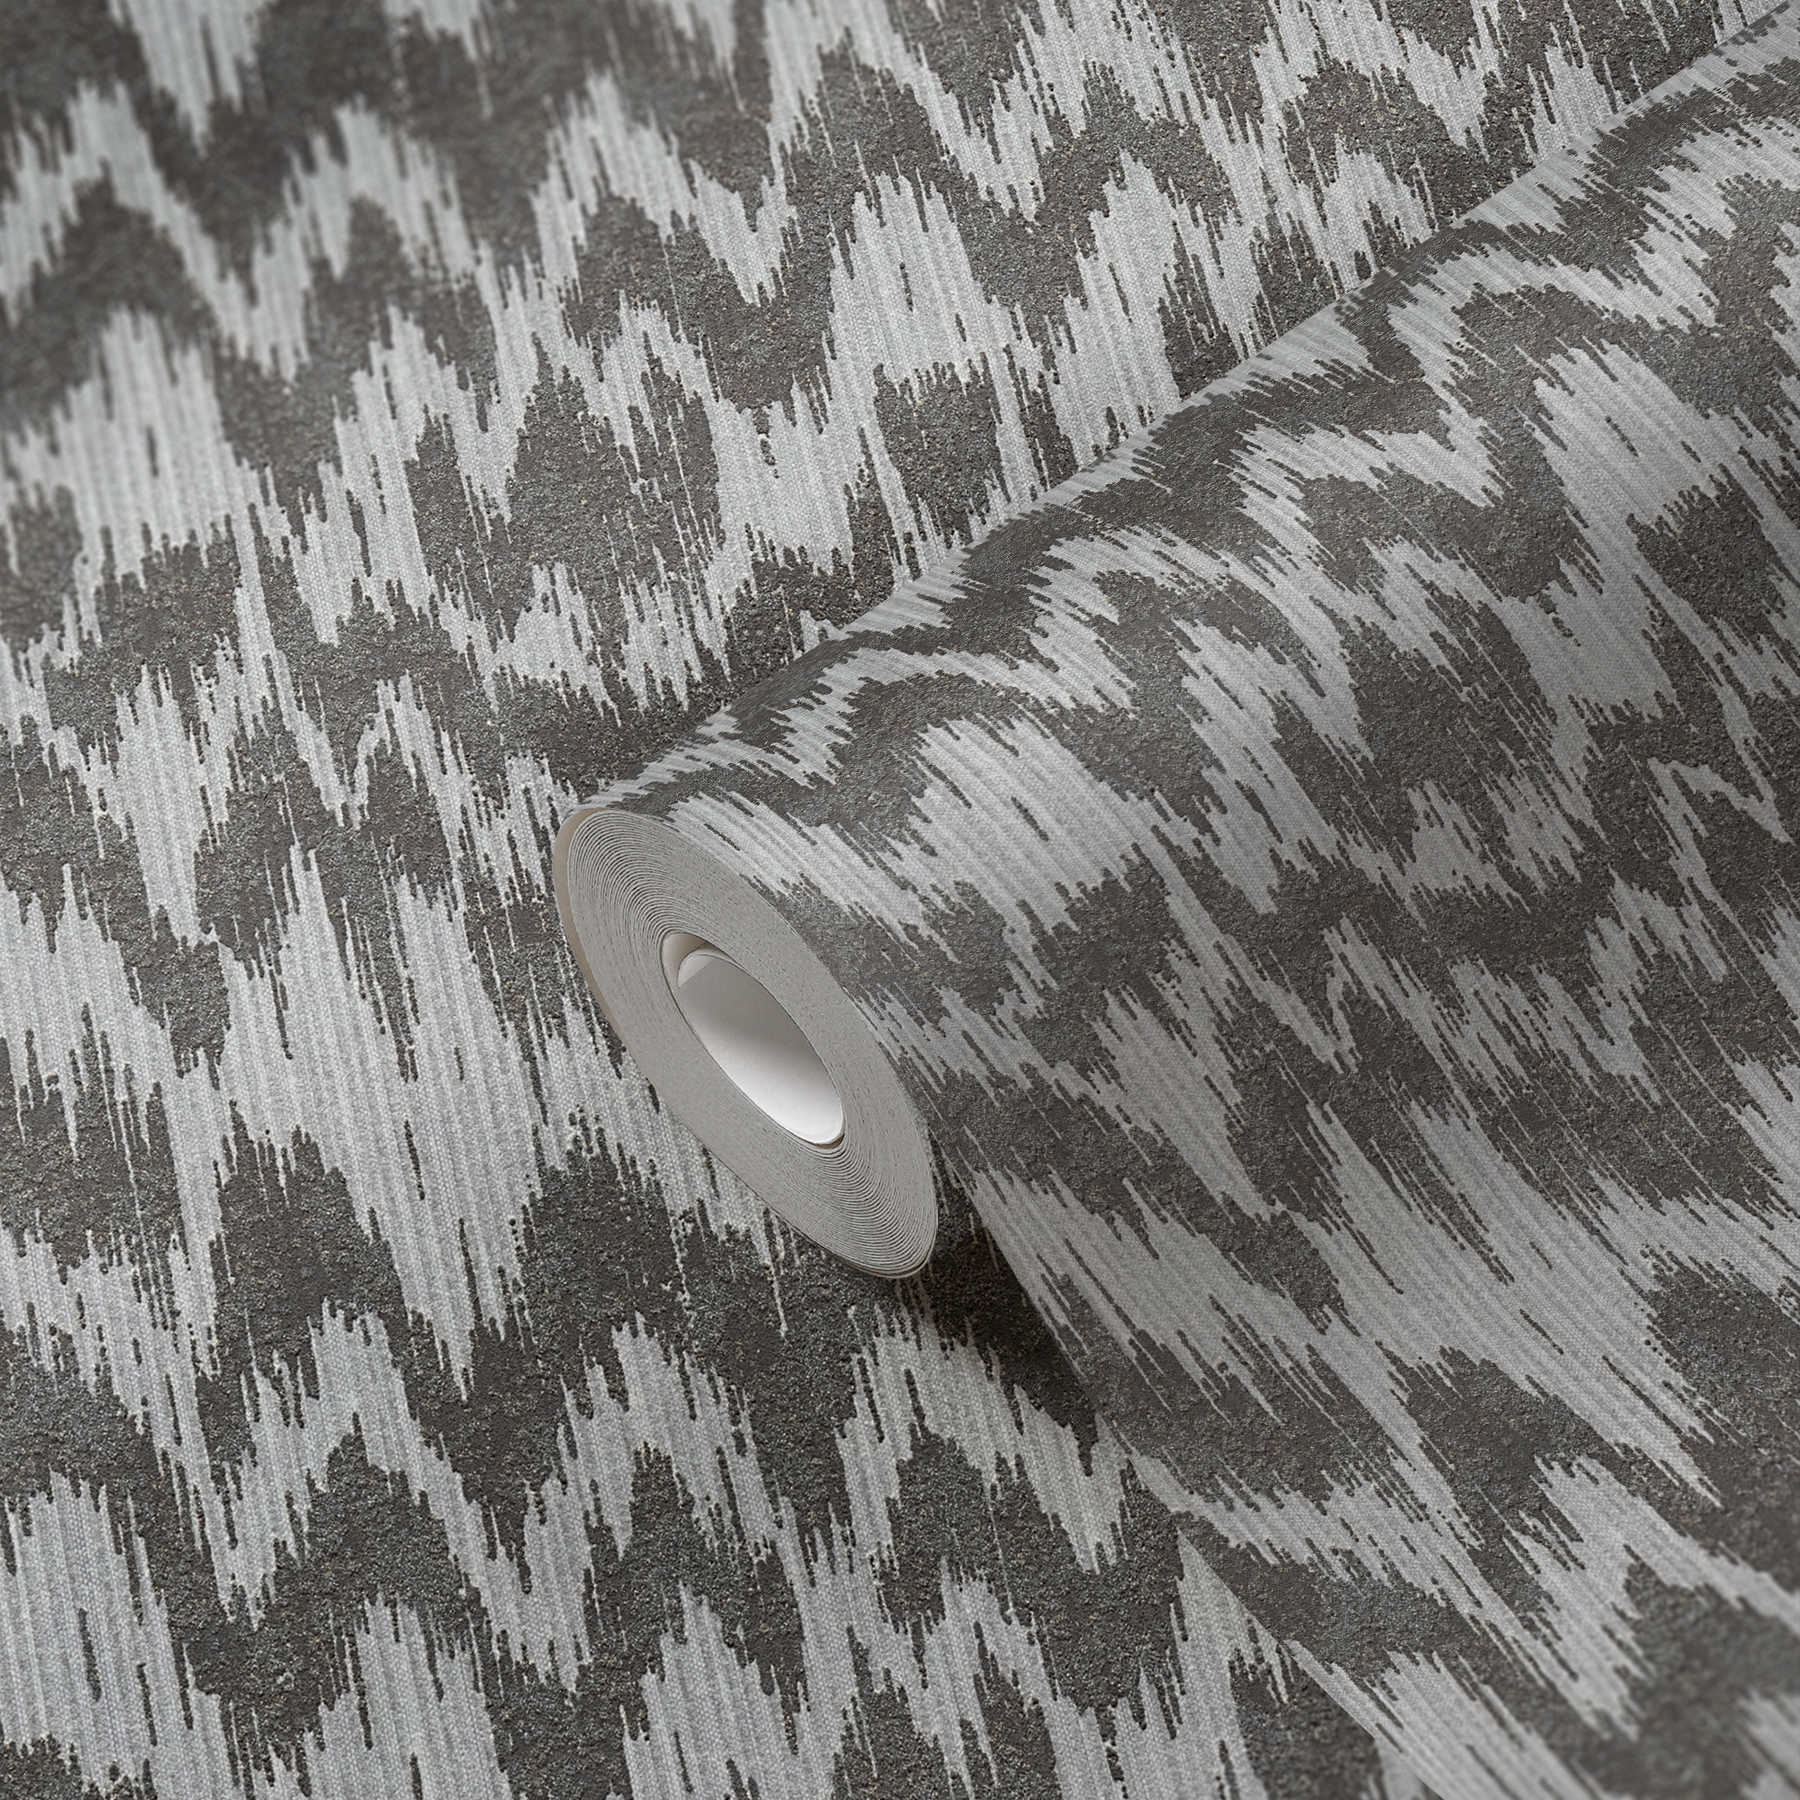             Papel pintado no tejido de estilo étnico con diseño textil metálico - gris, metálico
        